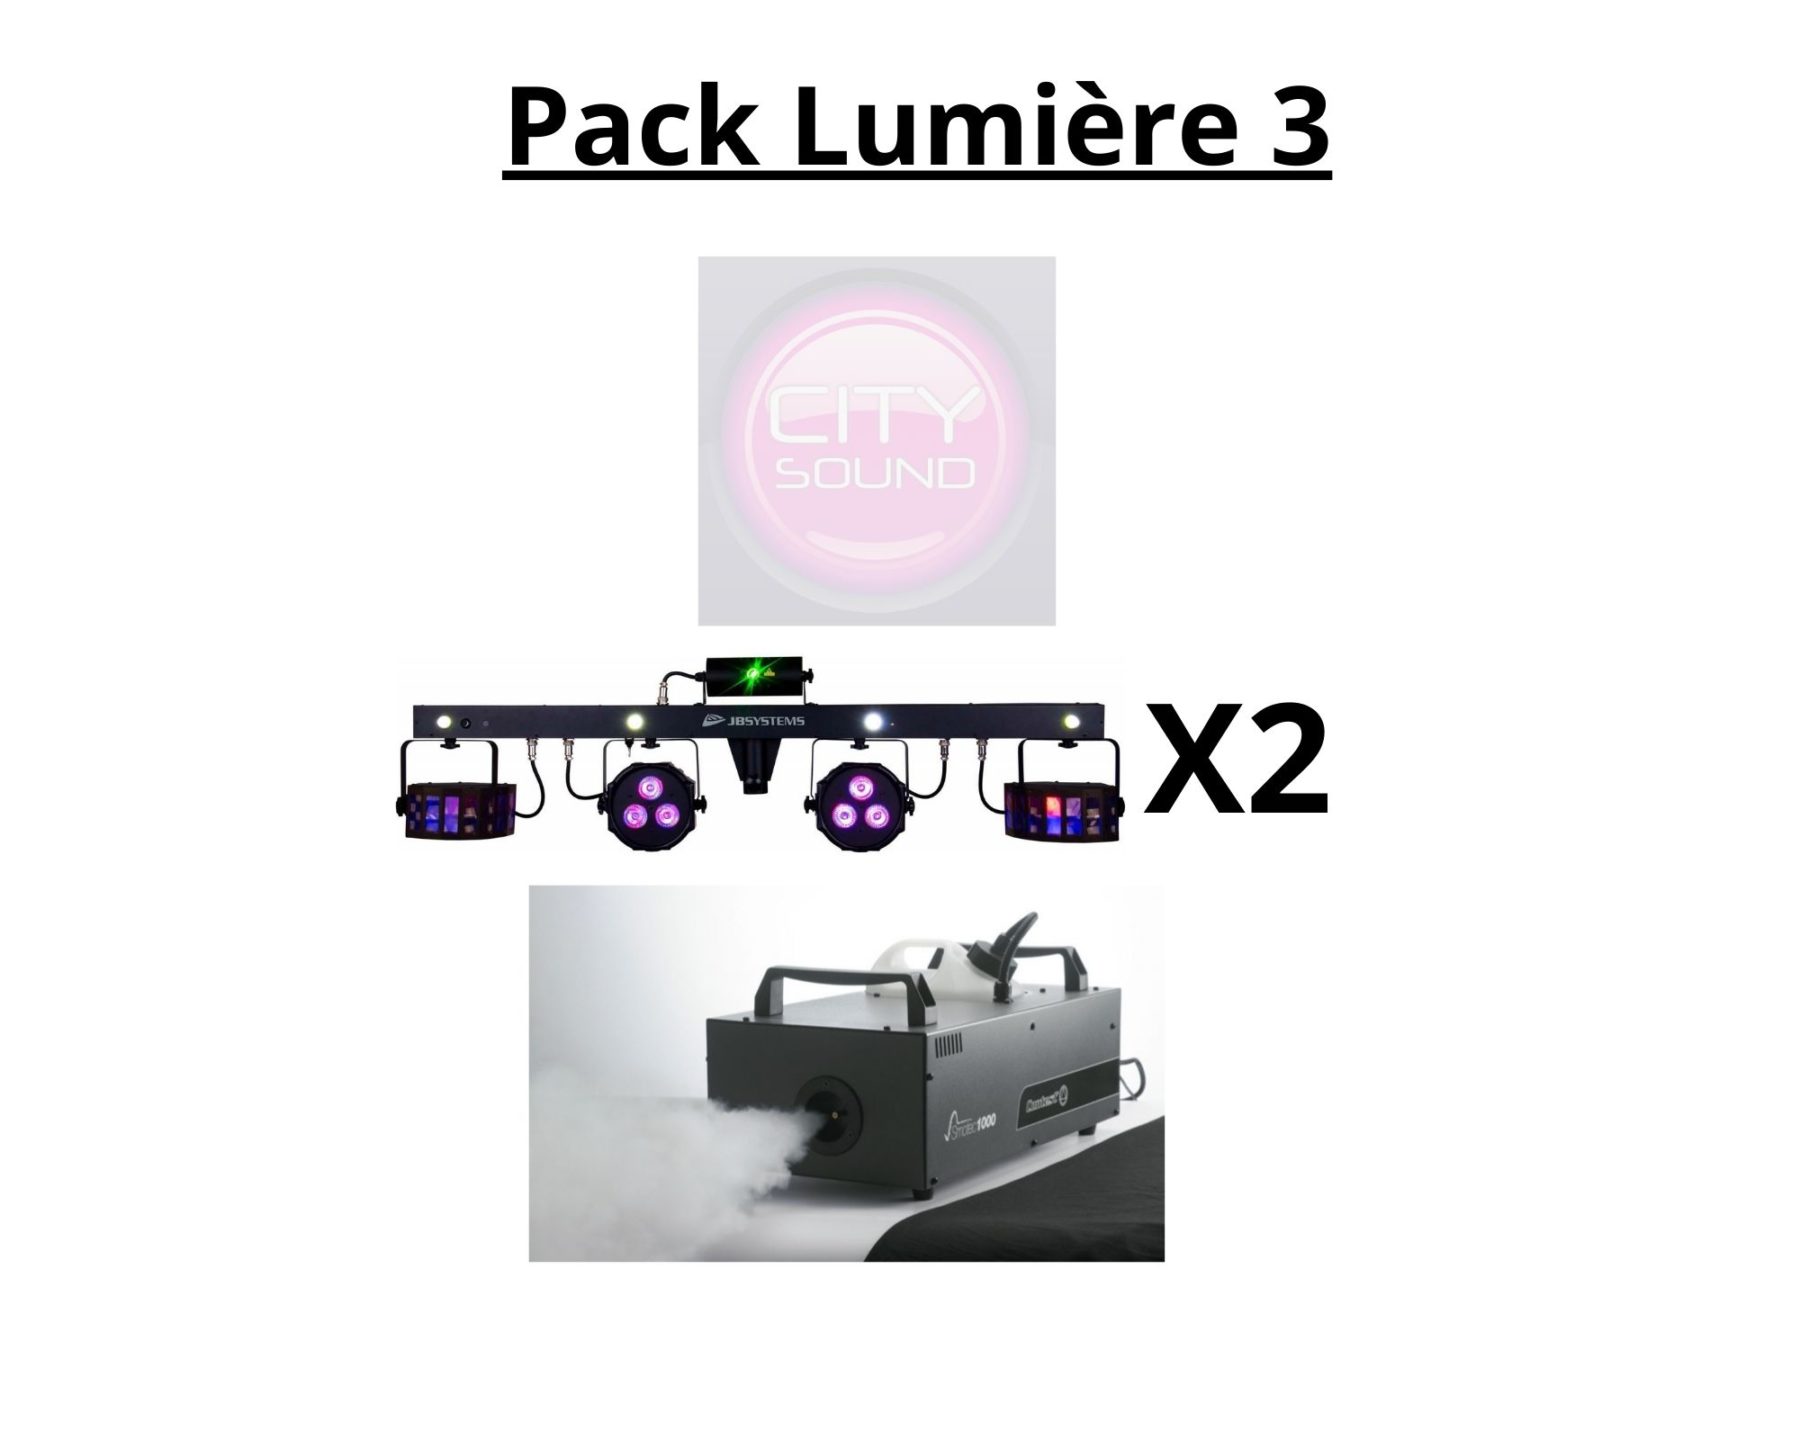 pack lumiere 3 - Accueil - Quimper Brest